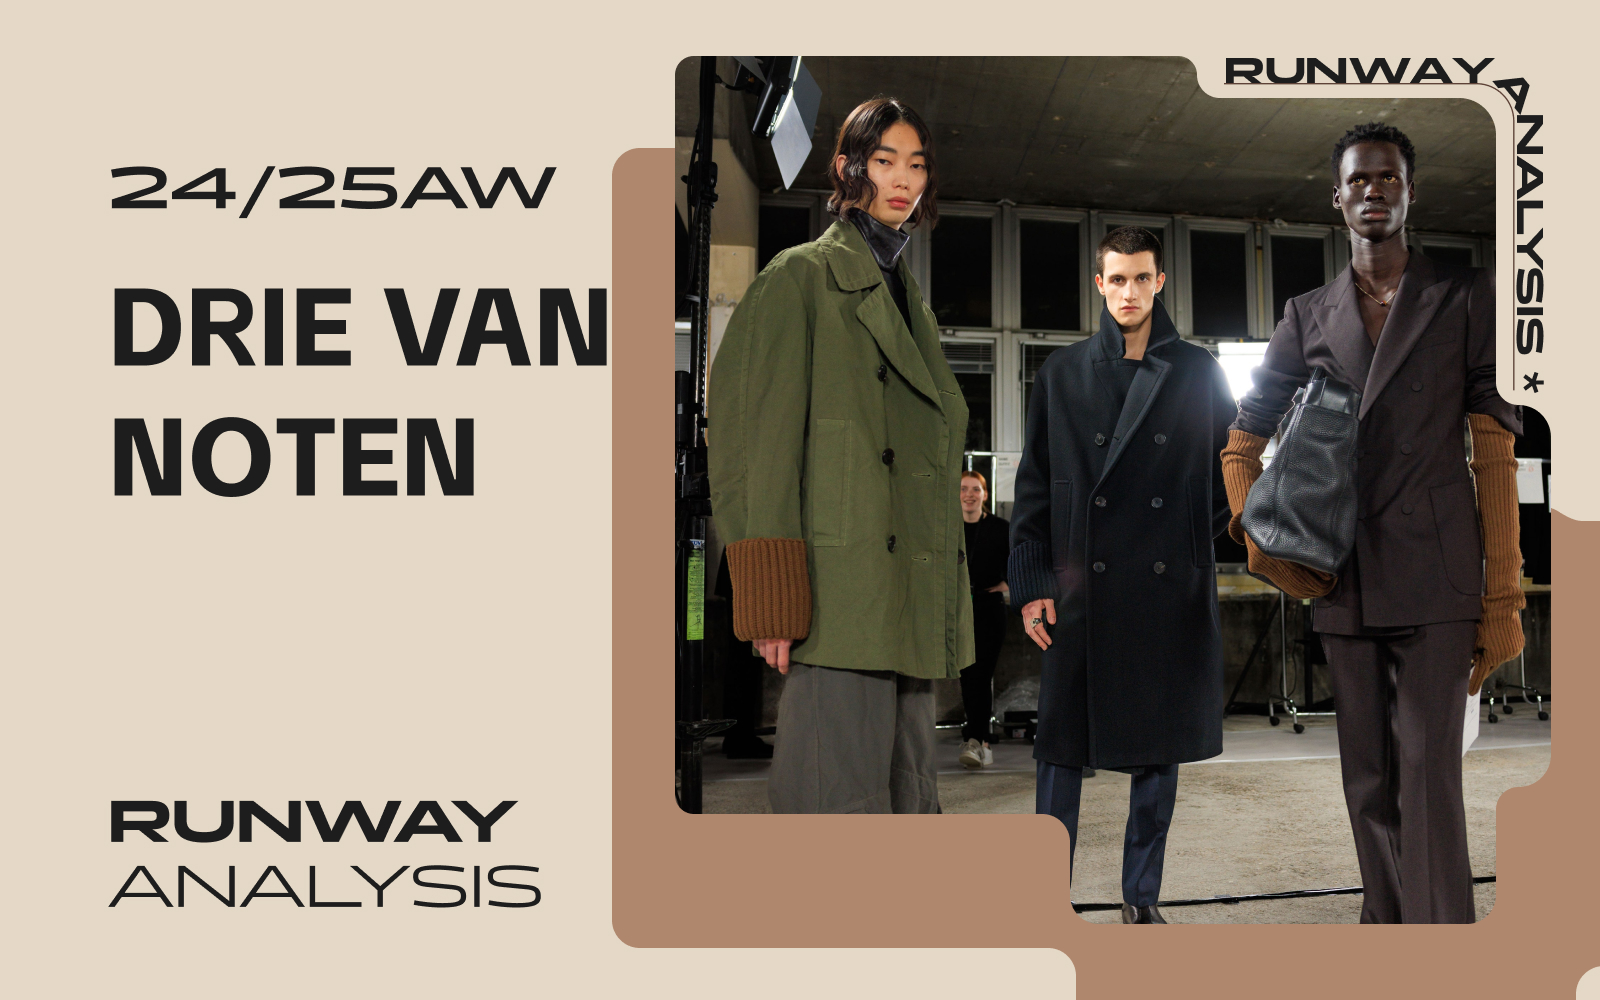 Exquisite and Elegance -- The Men's Runway Analysis of Dries Van Noten